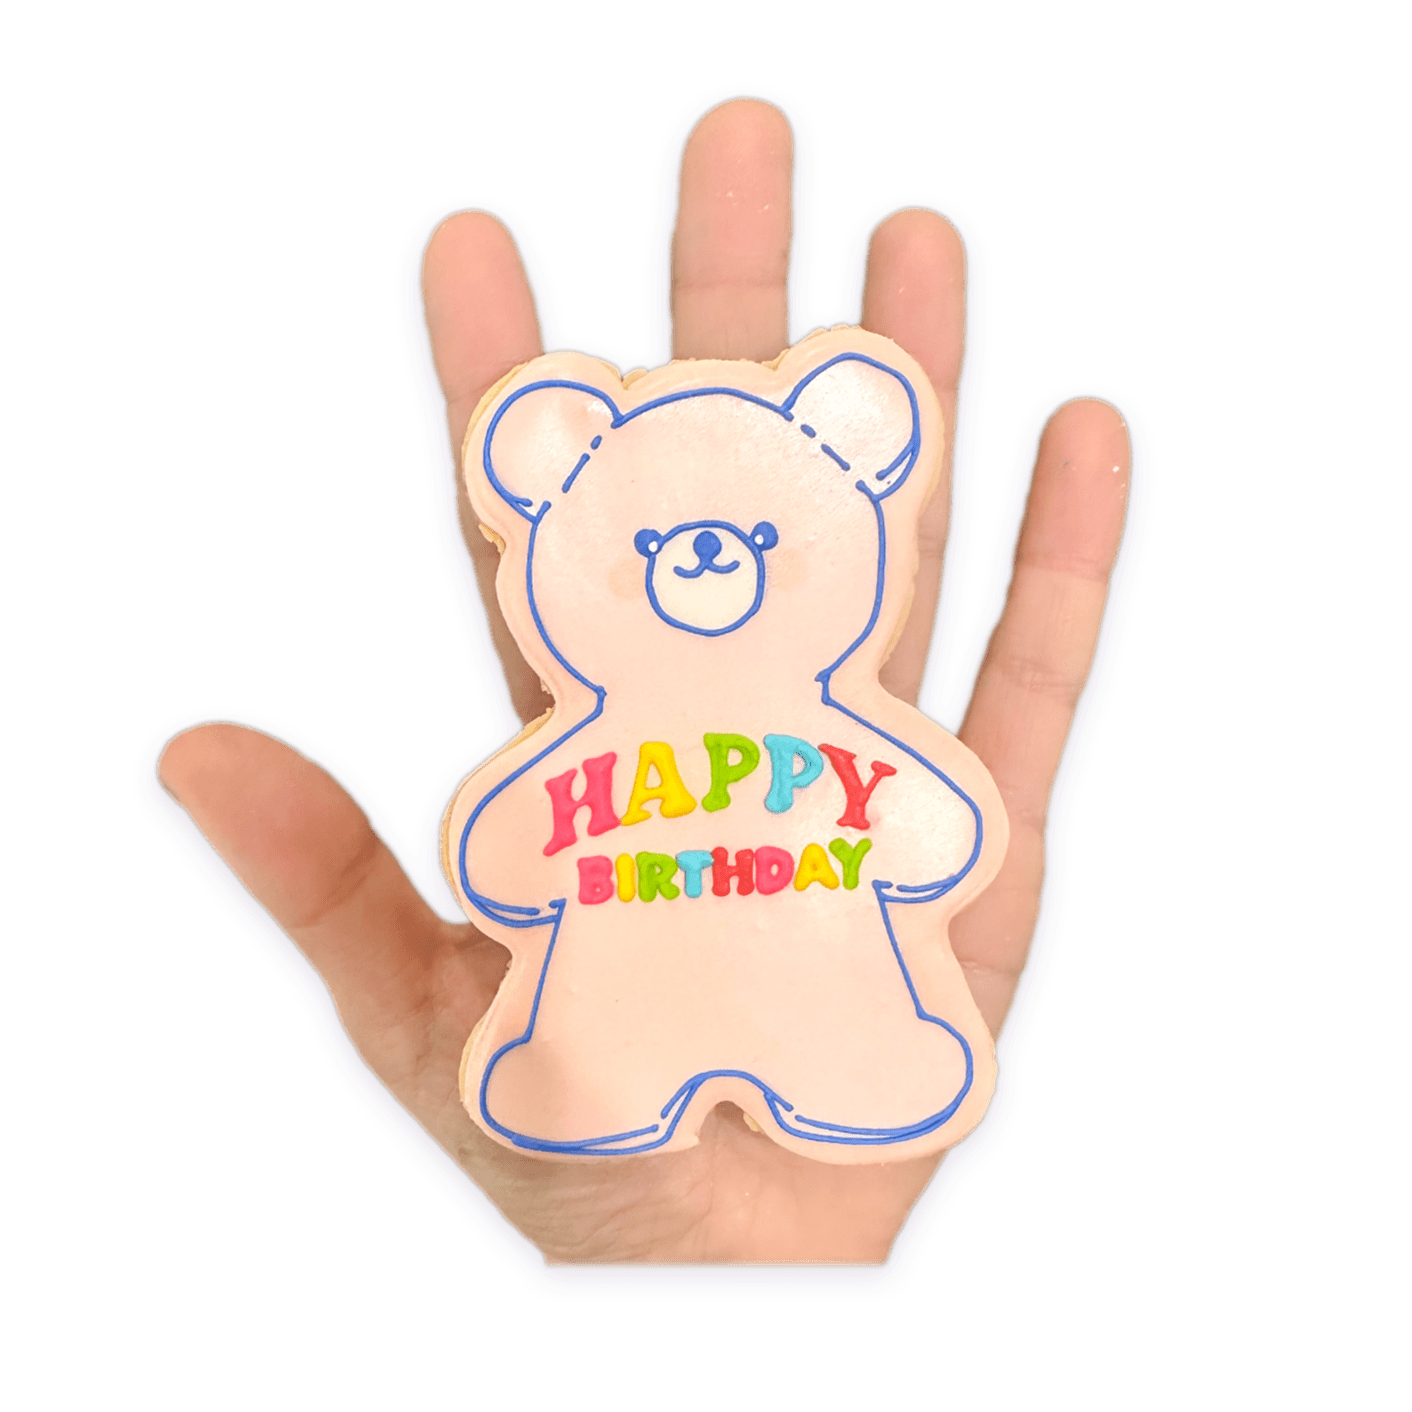 Happy Bear-day - Funny Face Bakery